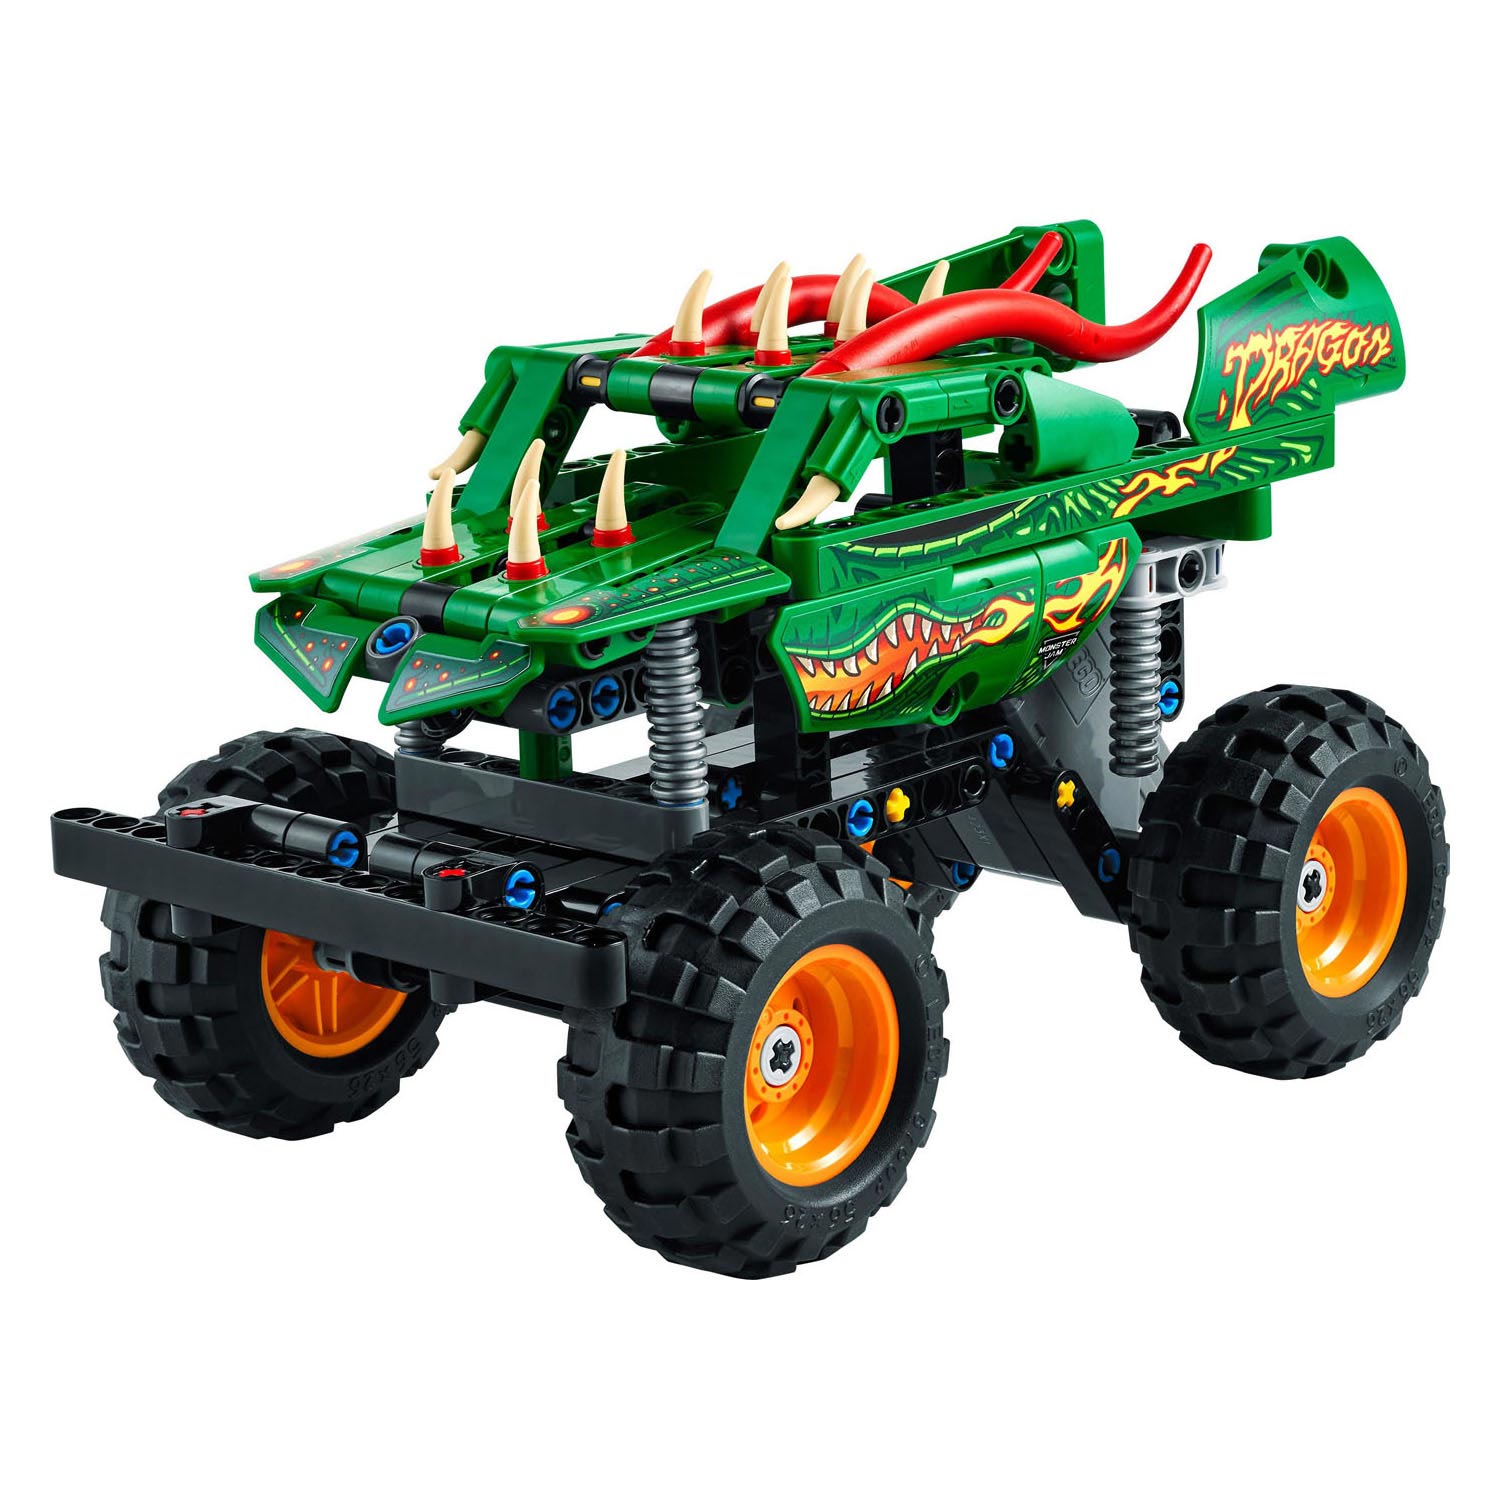 LEGO Technic 42149 Monster Jam Dragon